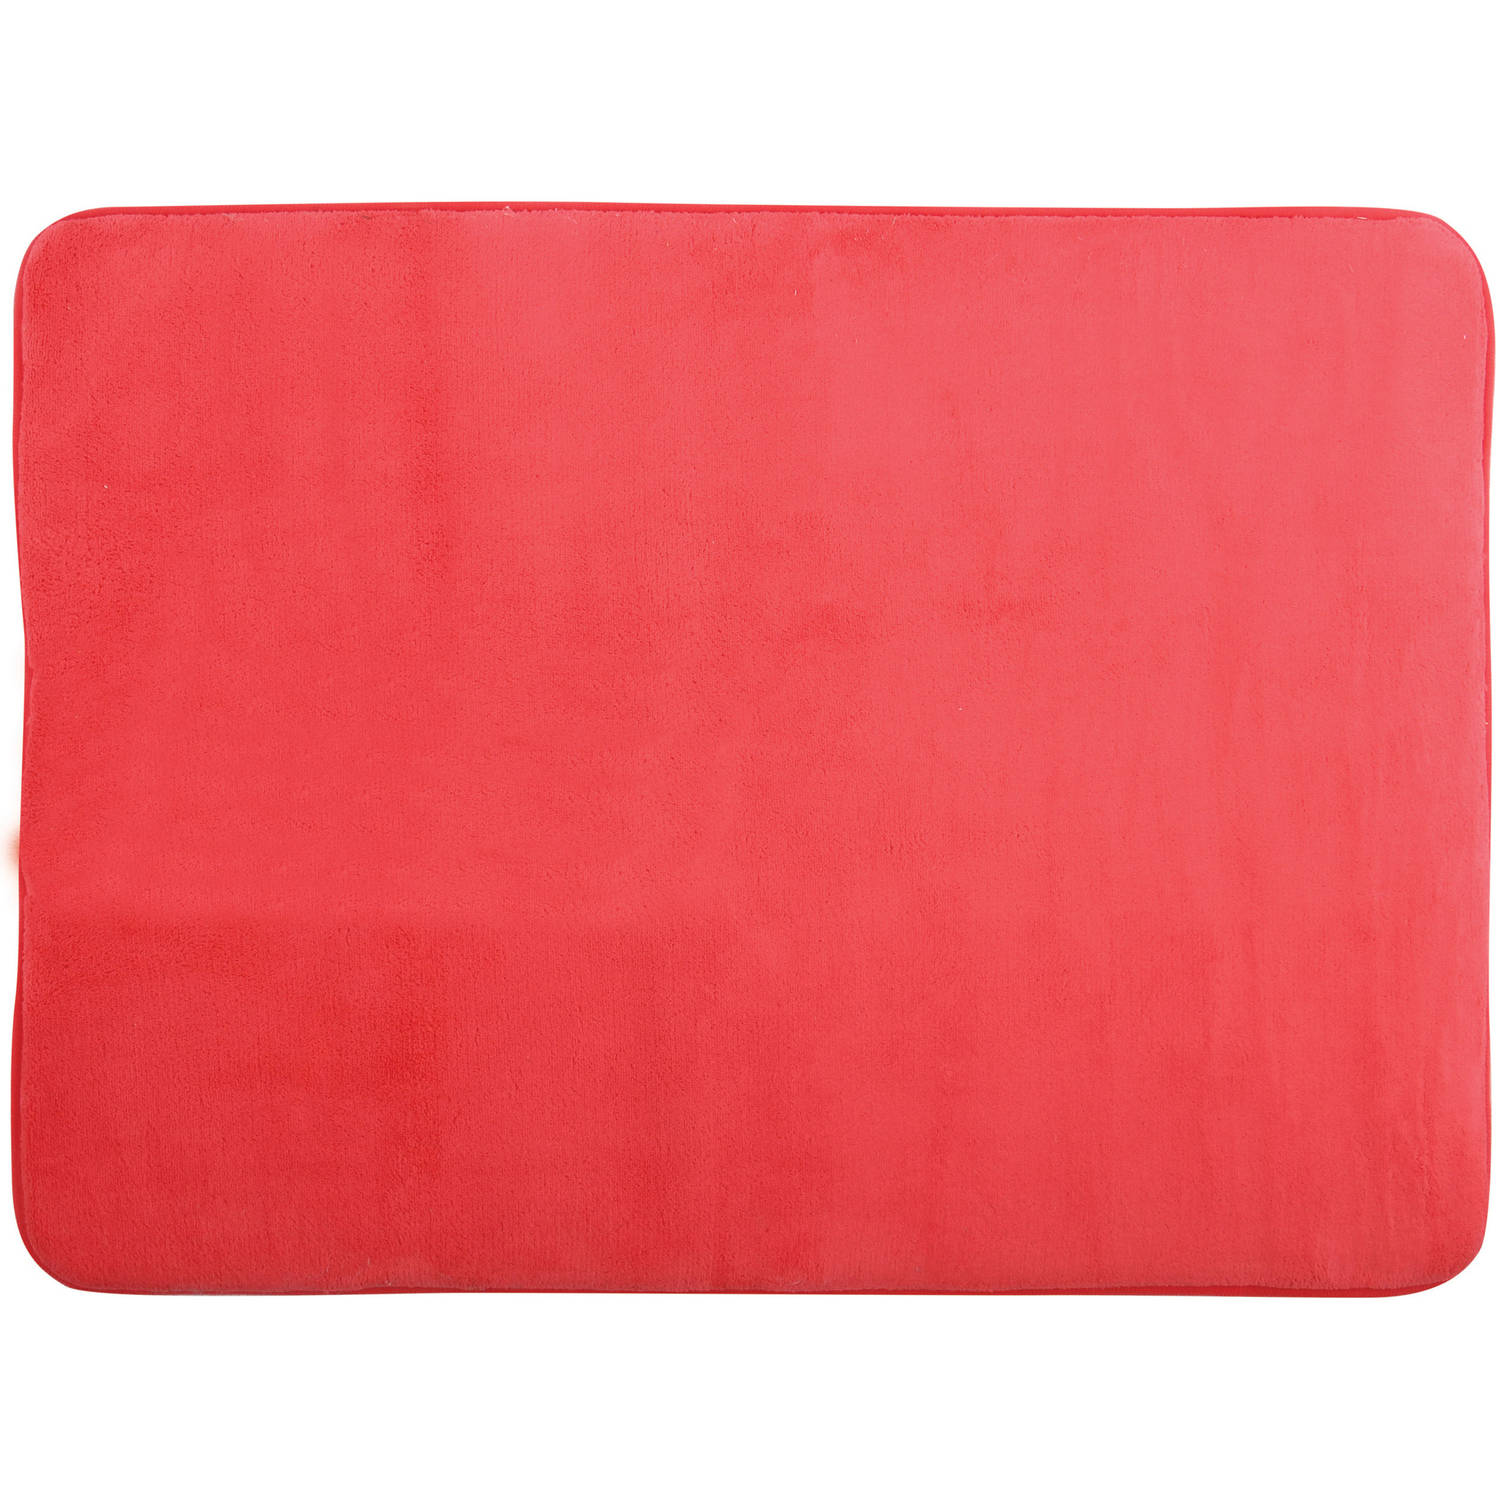 MSV Badkamerkleedje-badmat tapijt voor op de vloer rood 50 x 70 cm Badmatjes